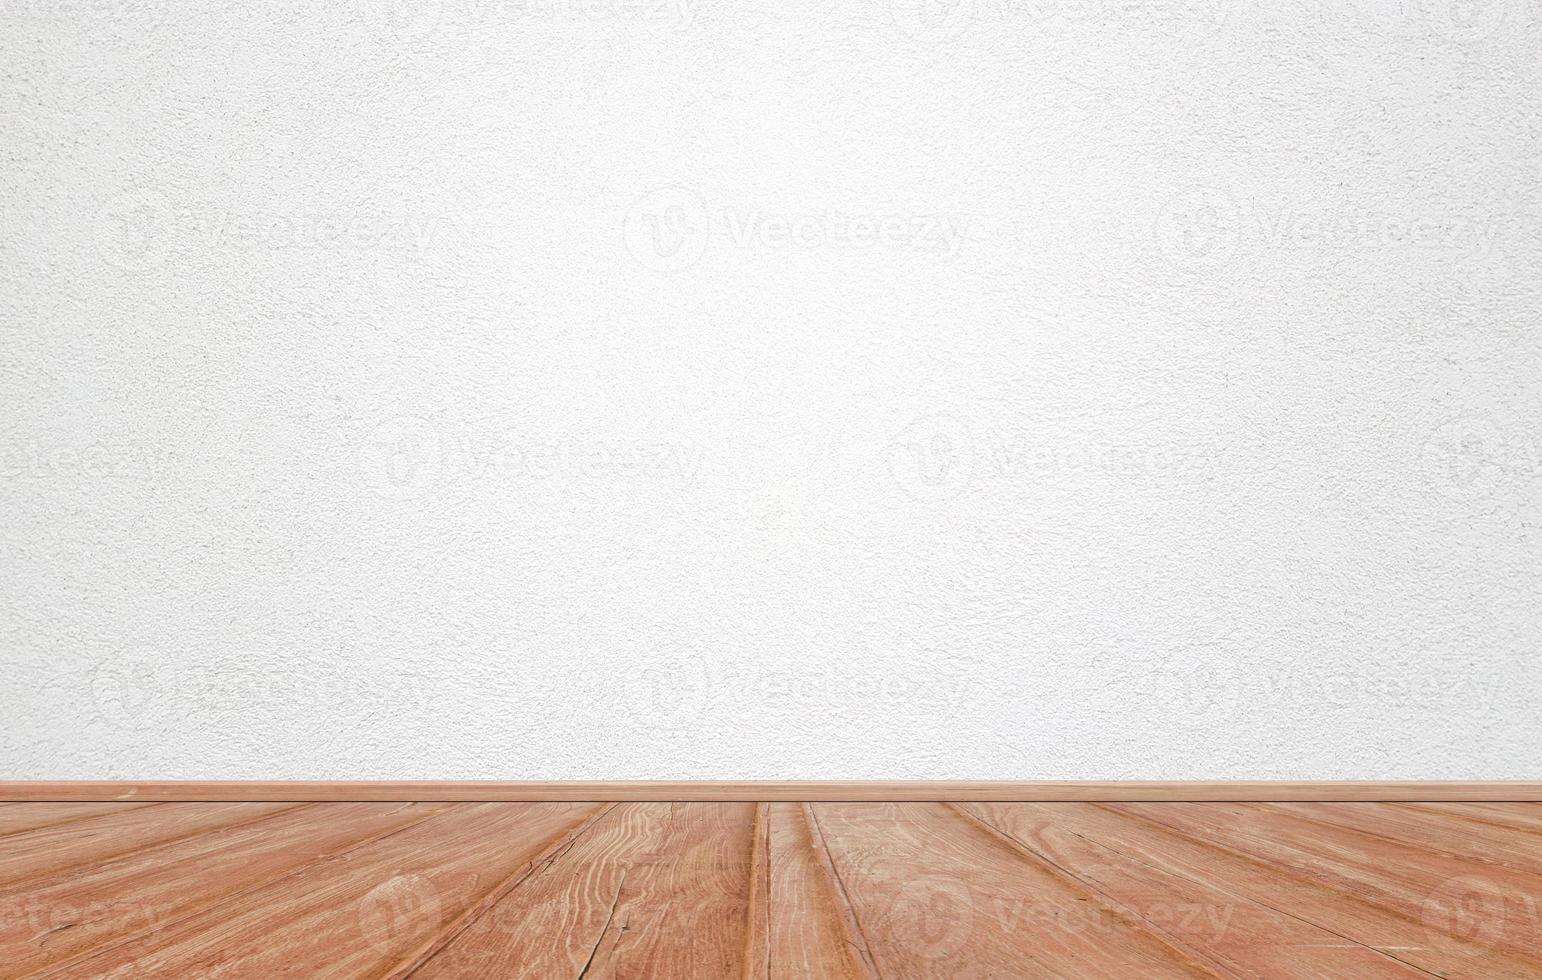 quarto interior vazio com textura de parede de cimento branco e padrão de piso de madeira marrom. conceito interior estilo vintage foto